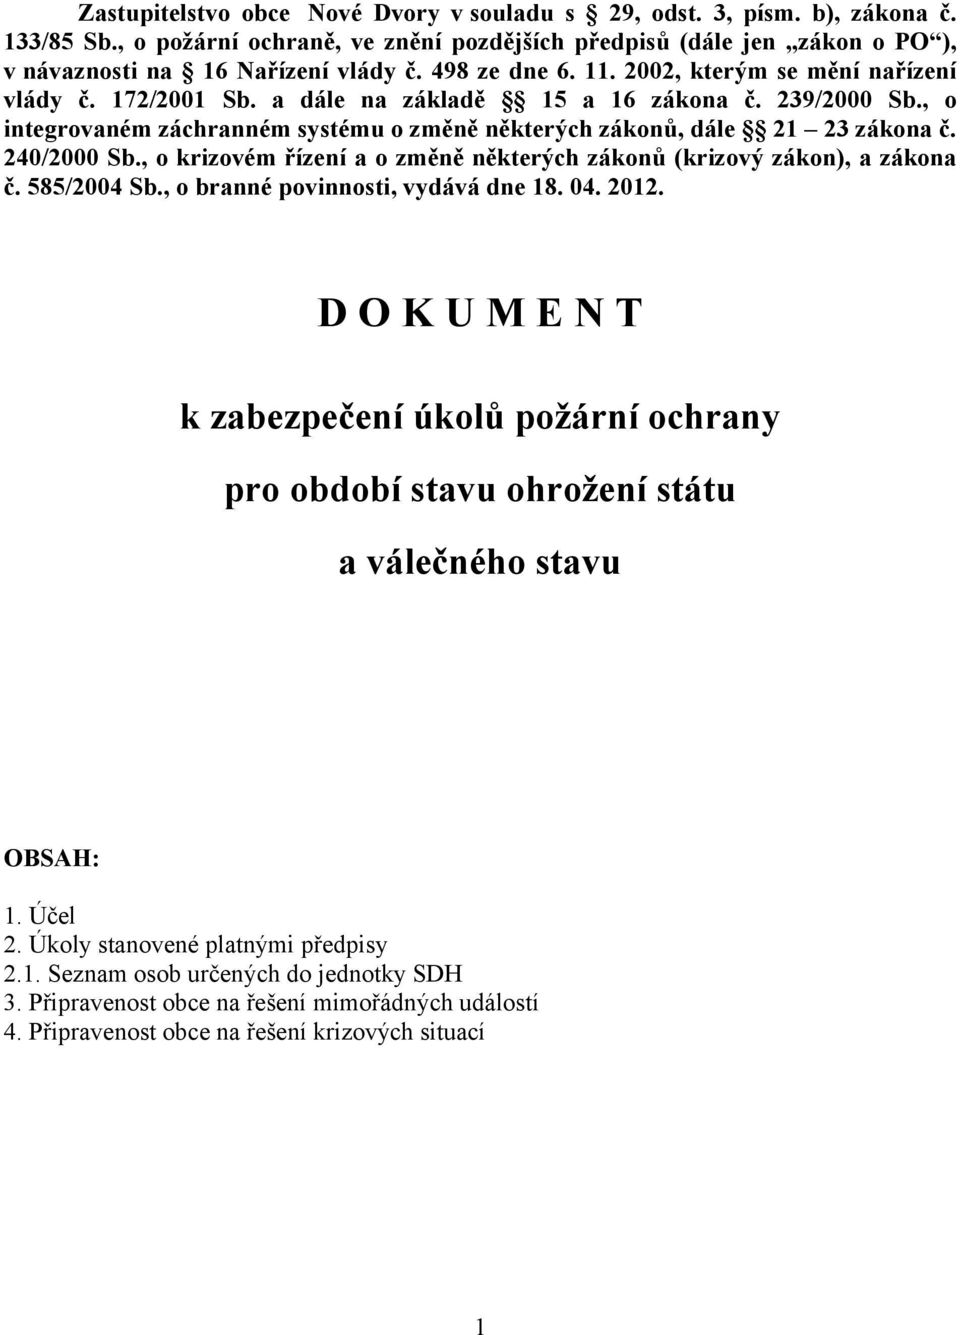 240/2000 Sb., o krizovém řízení a o změně některých zákonů (krizový zákon), a zákona č. 585/2004 Sb., o branné povinnosti, vydává dne 18. 04. 2012.